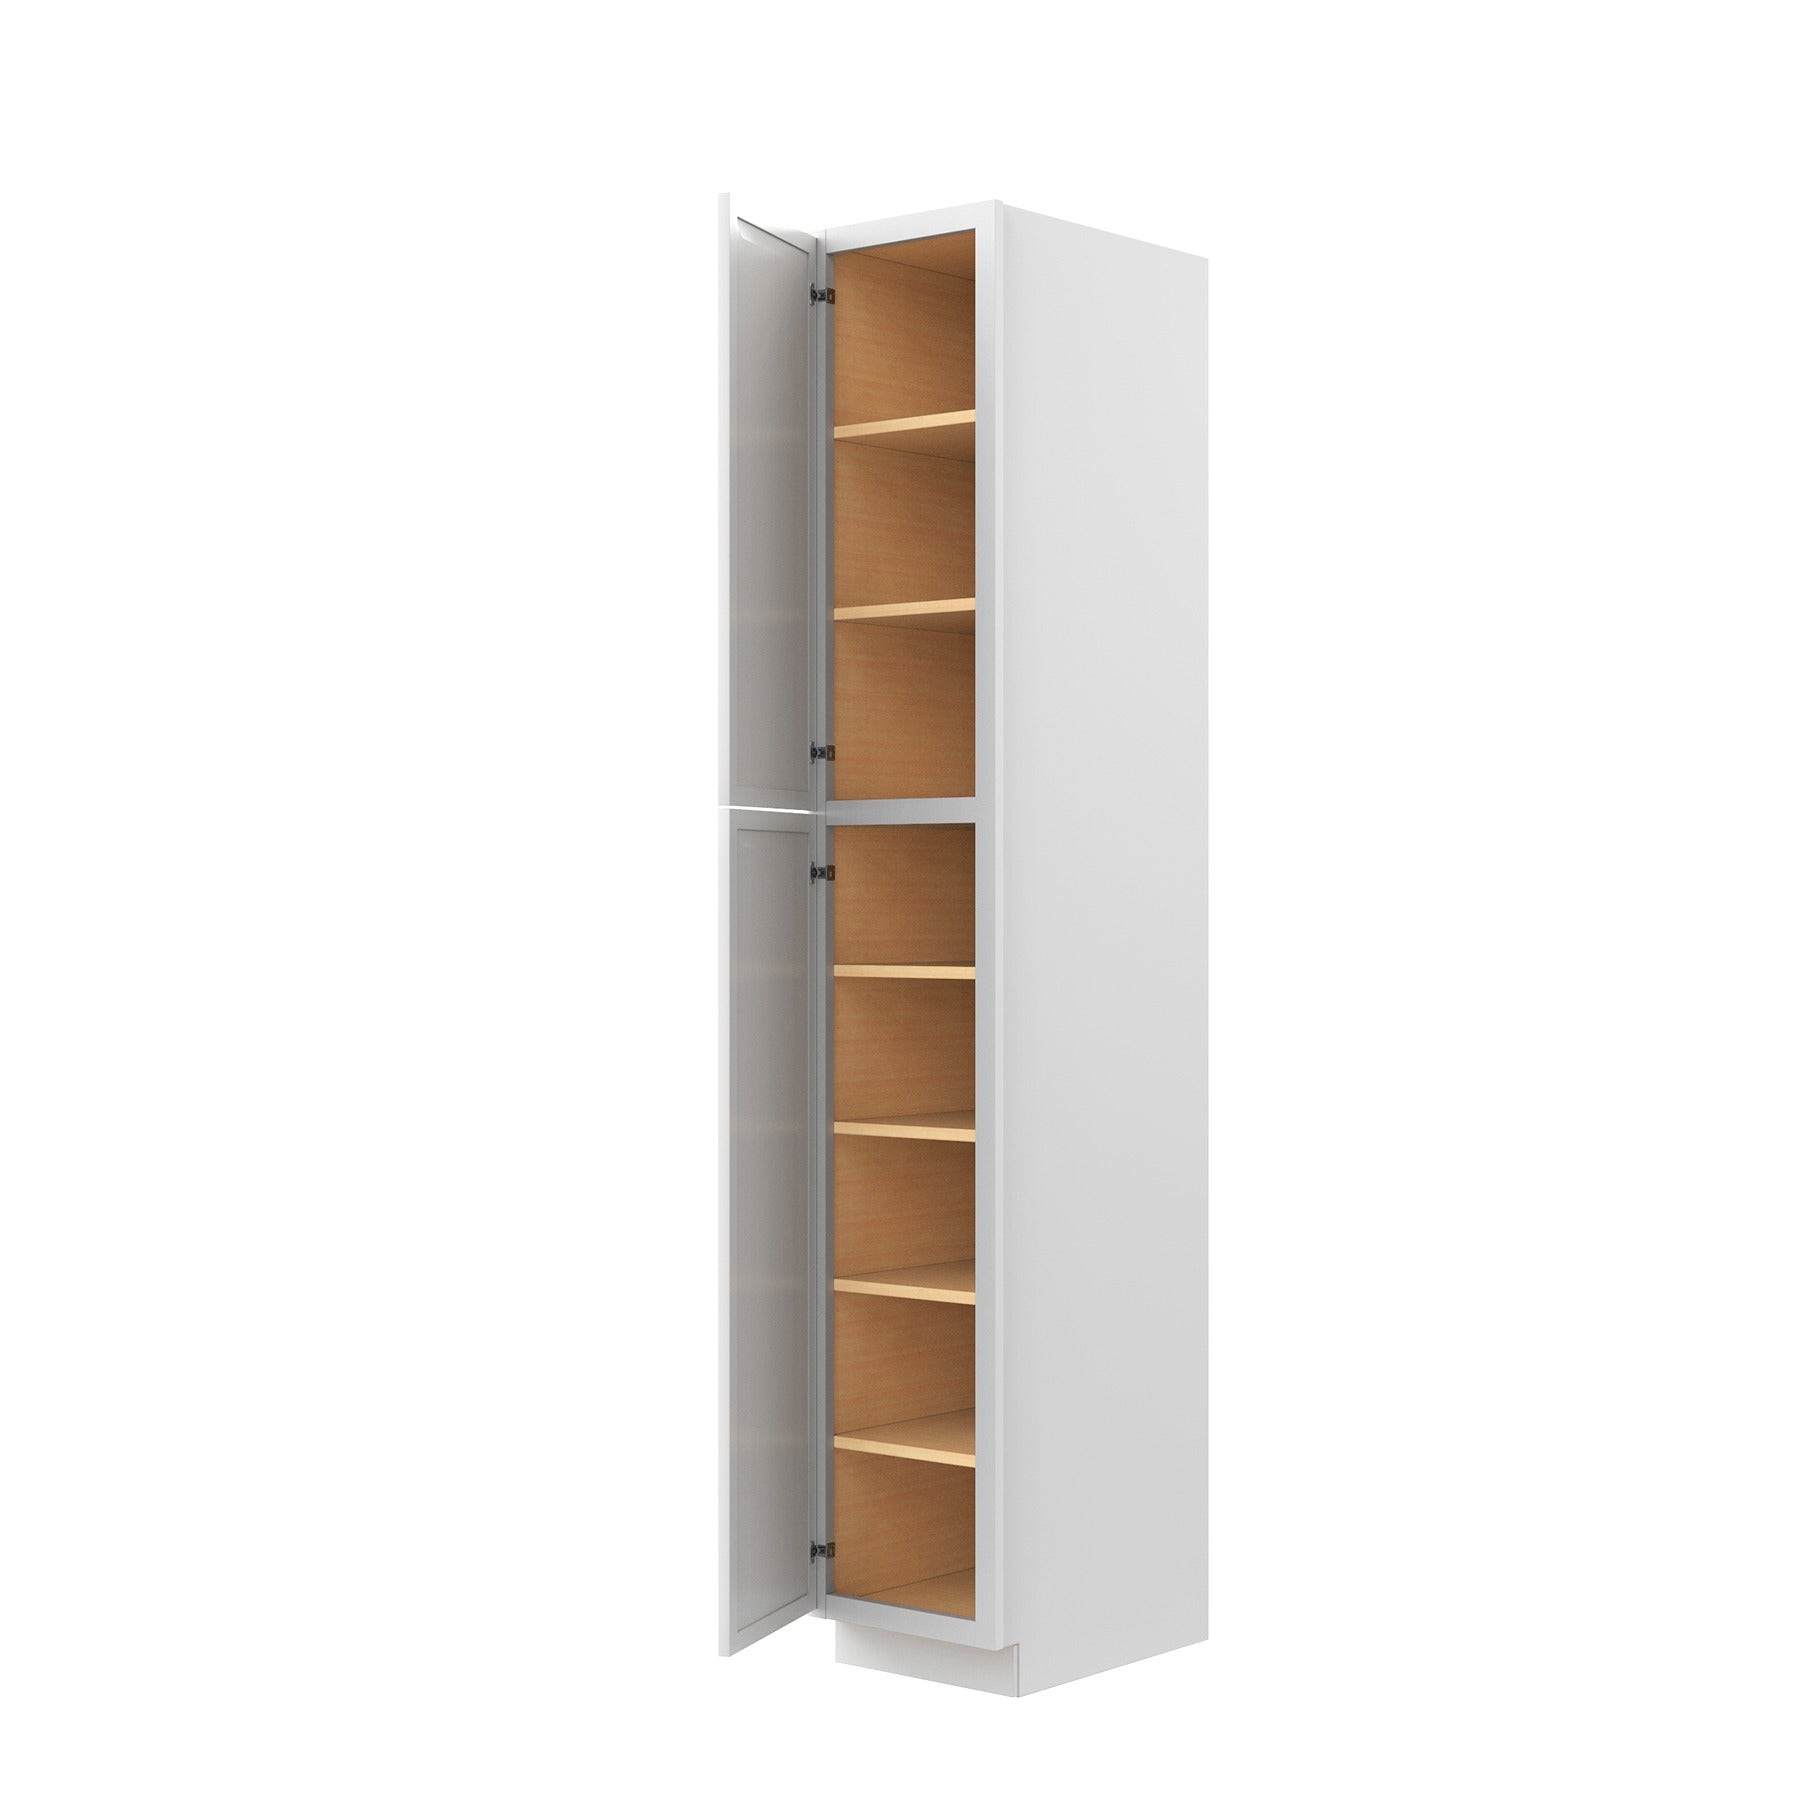 RTA - Park Avenue White - Single Door Utility Cabinet | 15"W x 90"H x 24"D